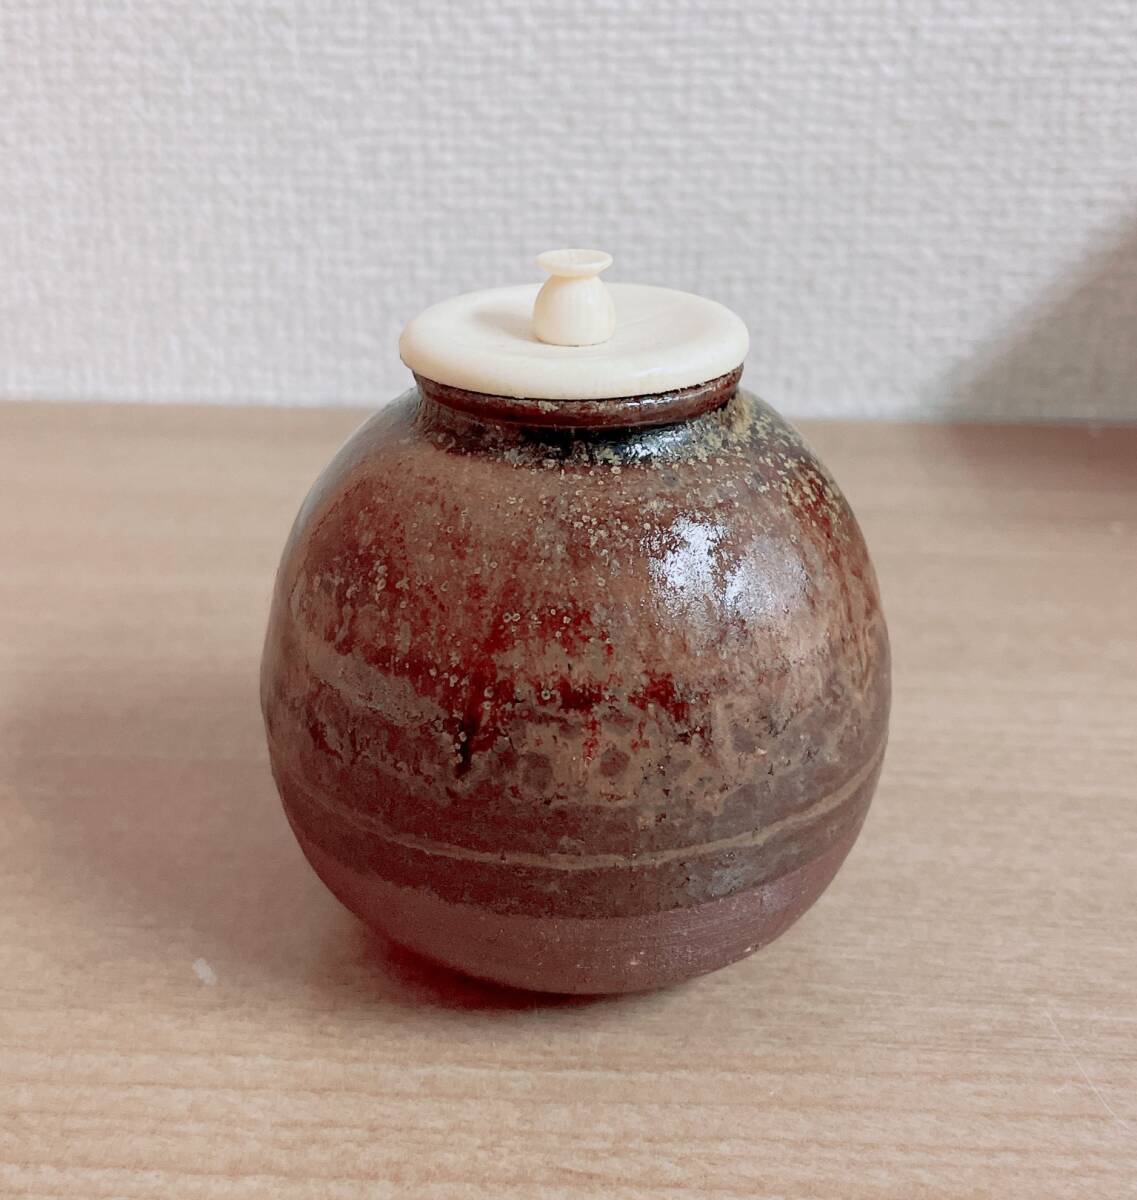 [[ камень рисовое поле . весна ] структура Tanba . чай входить ] вместе в коробке / печать иметь / чайная посуда /M62-321